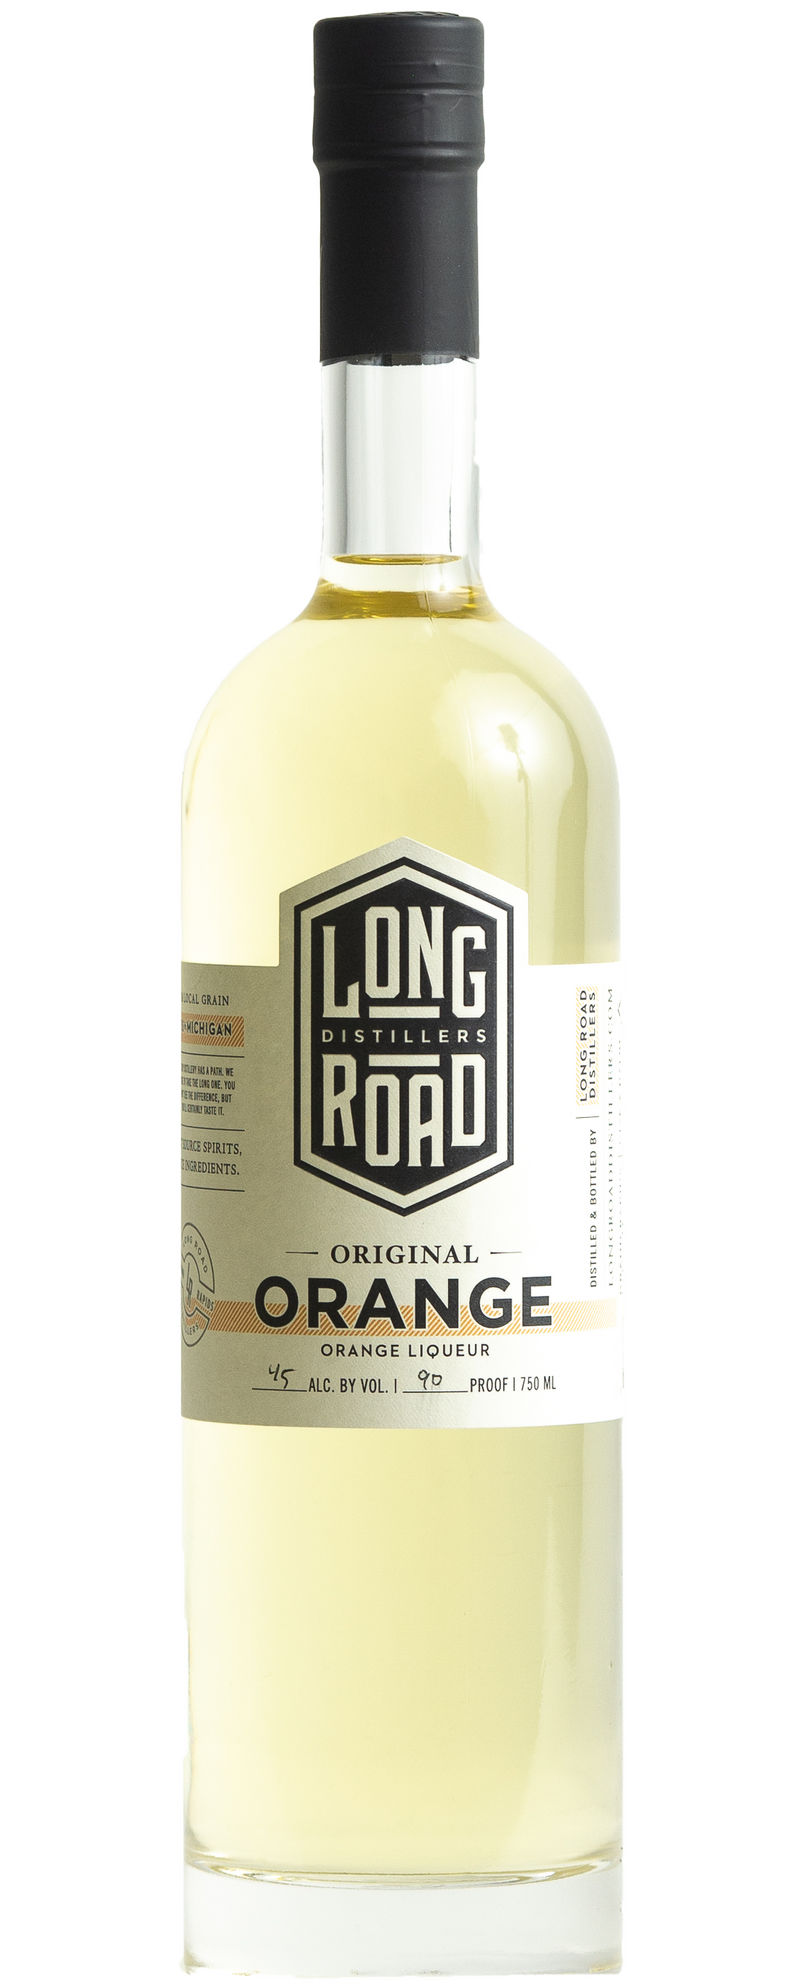 LONG ROAD ORANGE LIQUEUR Cordials & Liqueurs – American BeverageWarehouse